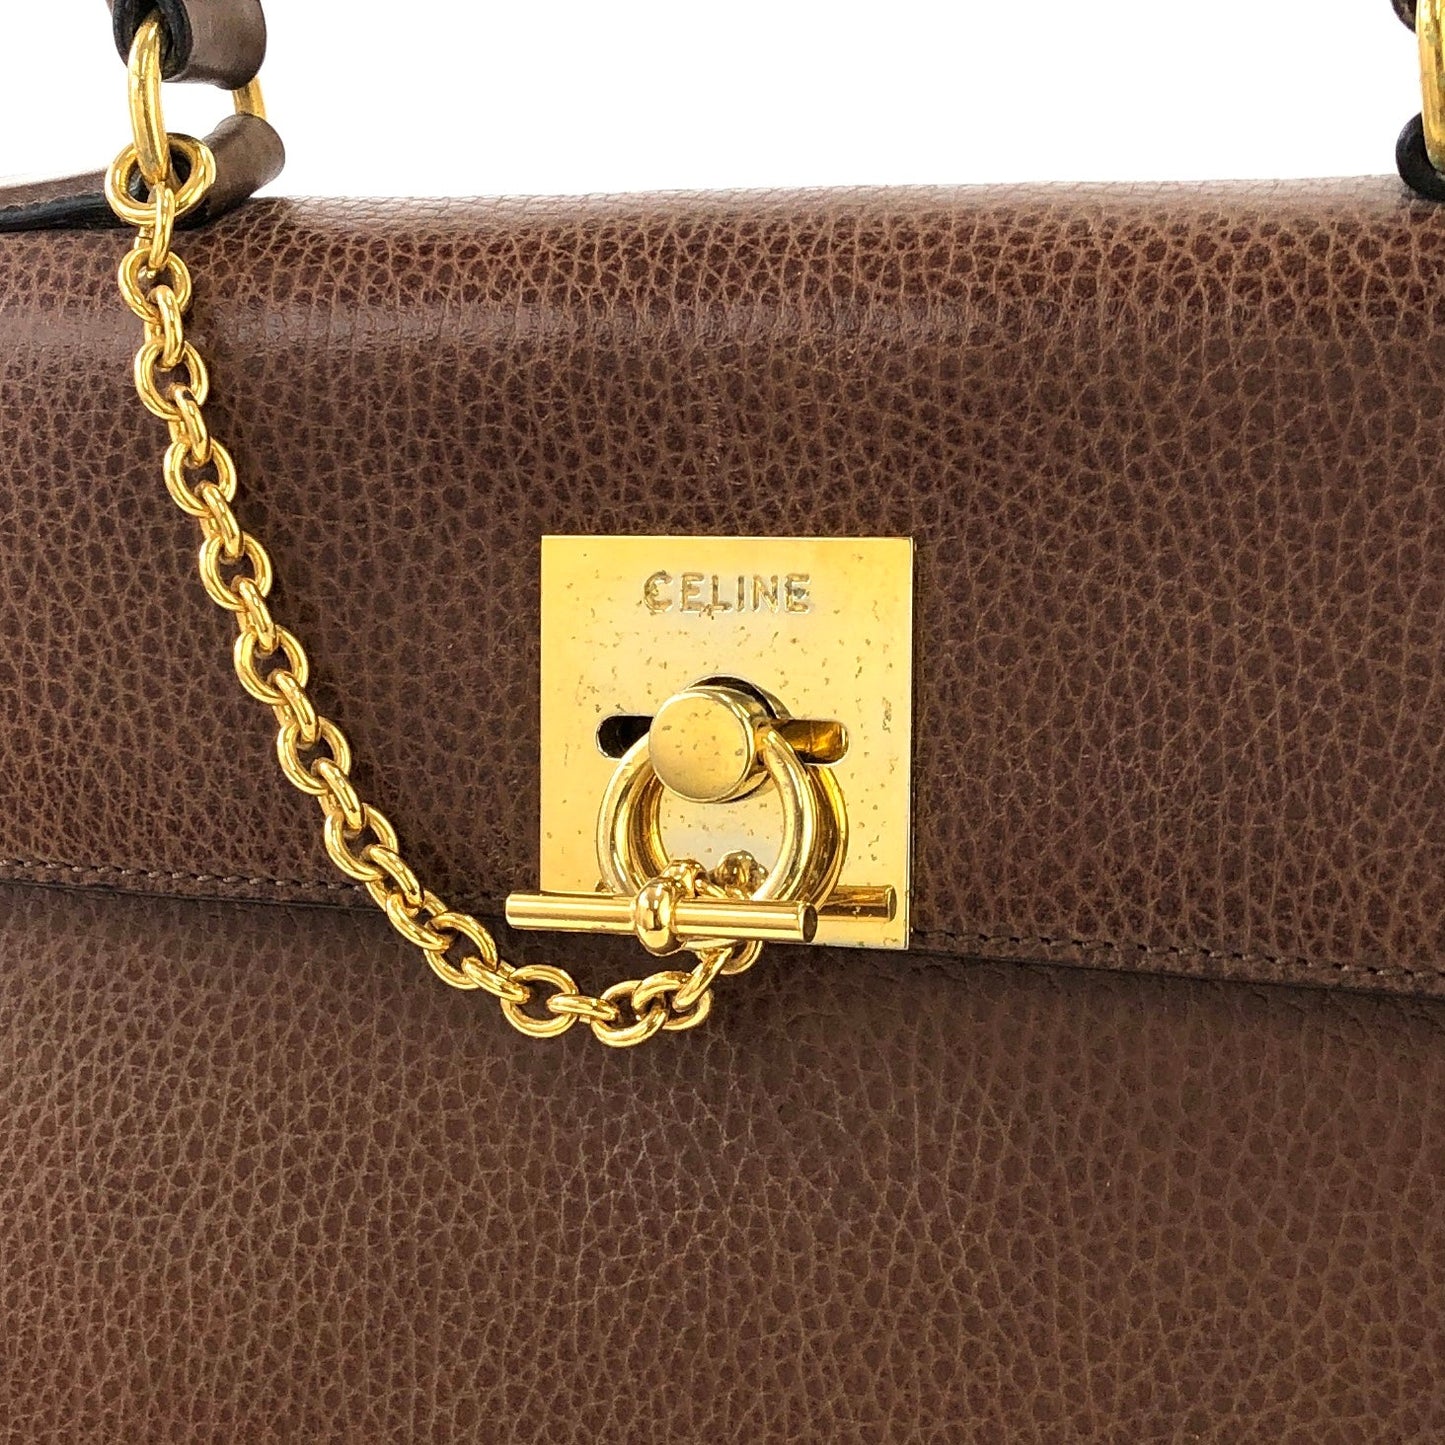 CELINE Mantel Chain Gancini Handbag Brown Vintage Old Celine jhzdh7